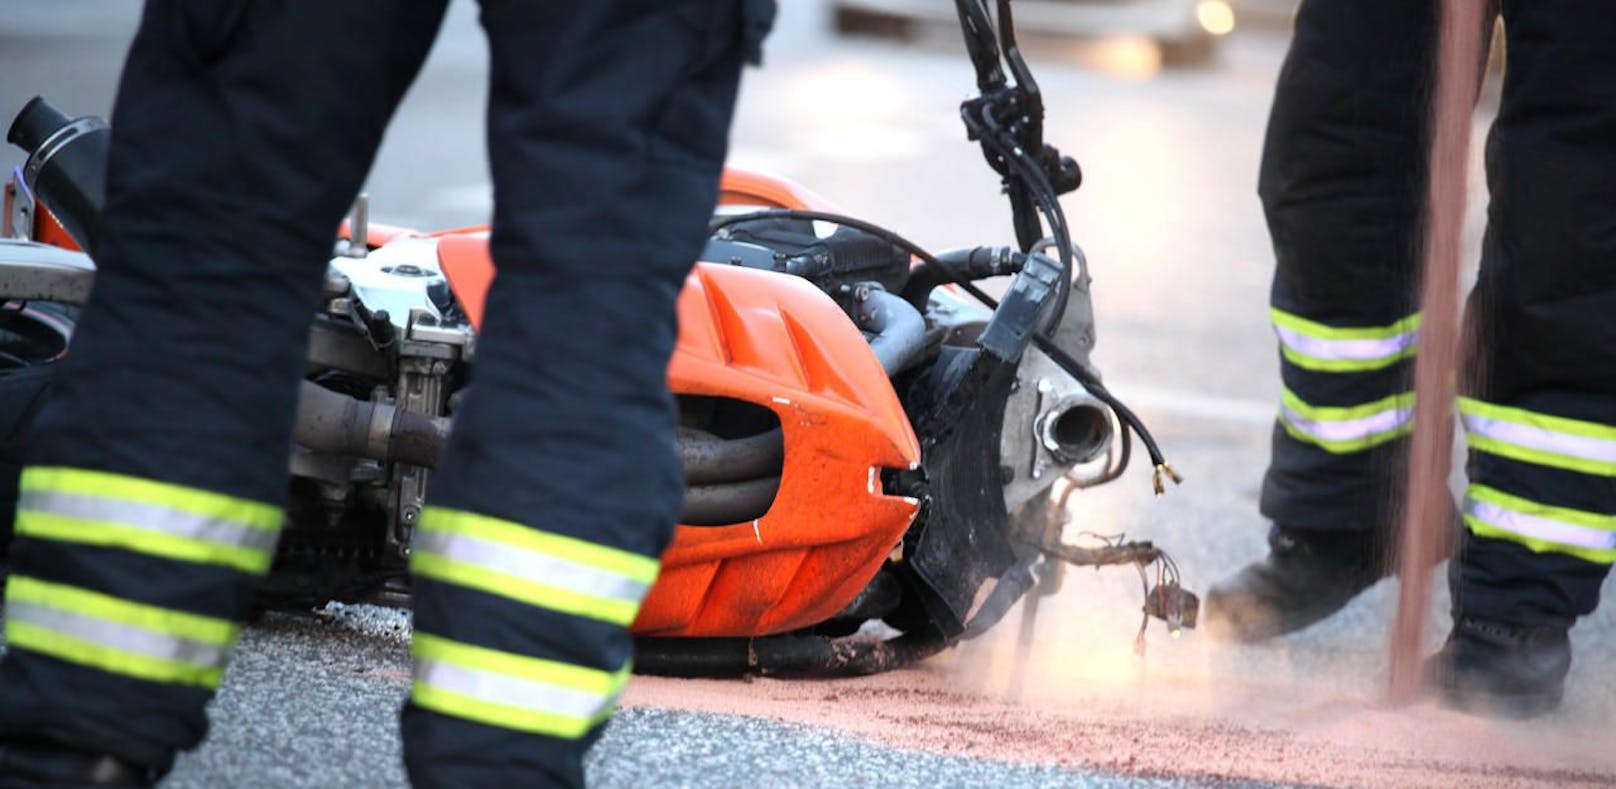 Ein Osttiroler erlag seinen schweren Verletzungen, nachdem er mit seinem Bike stürzte. (Symbolfoto)&nbsp;